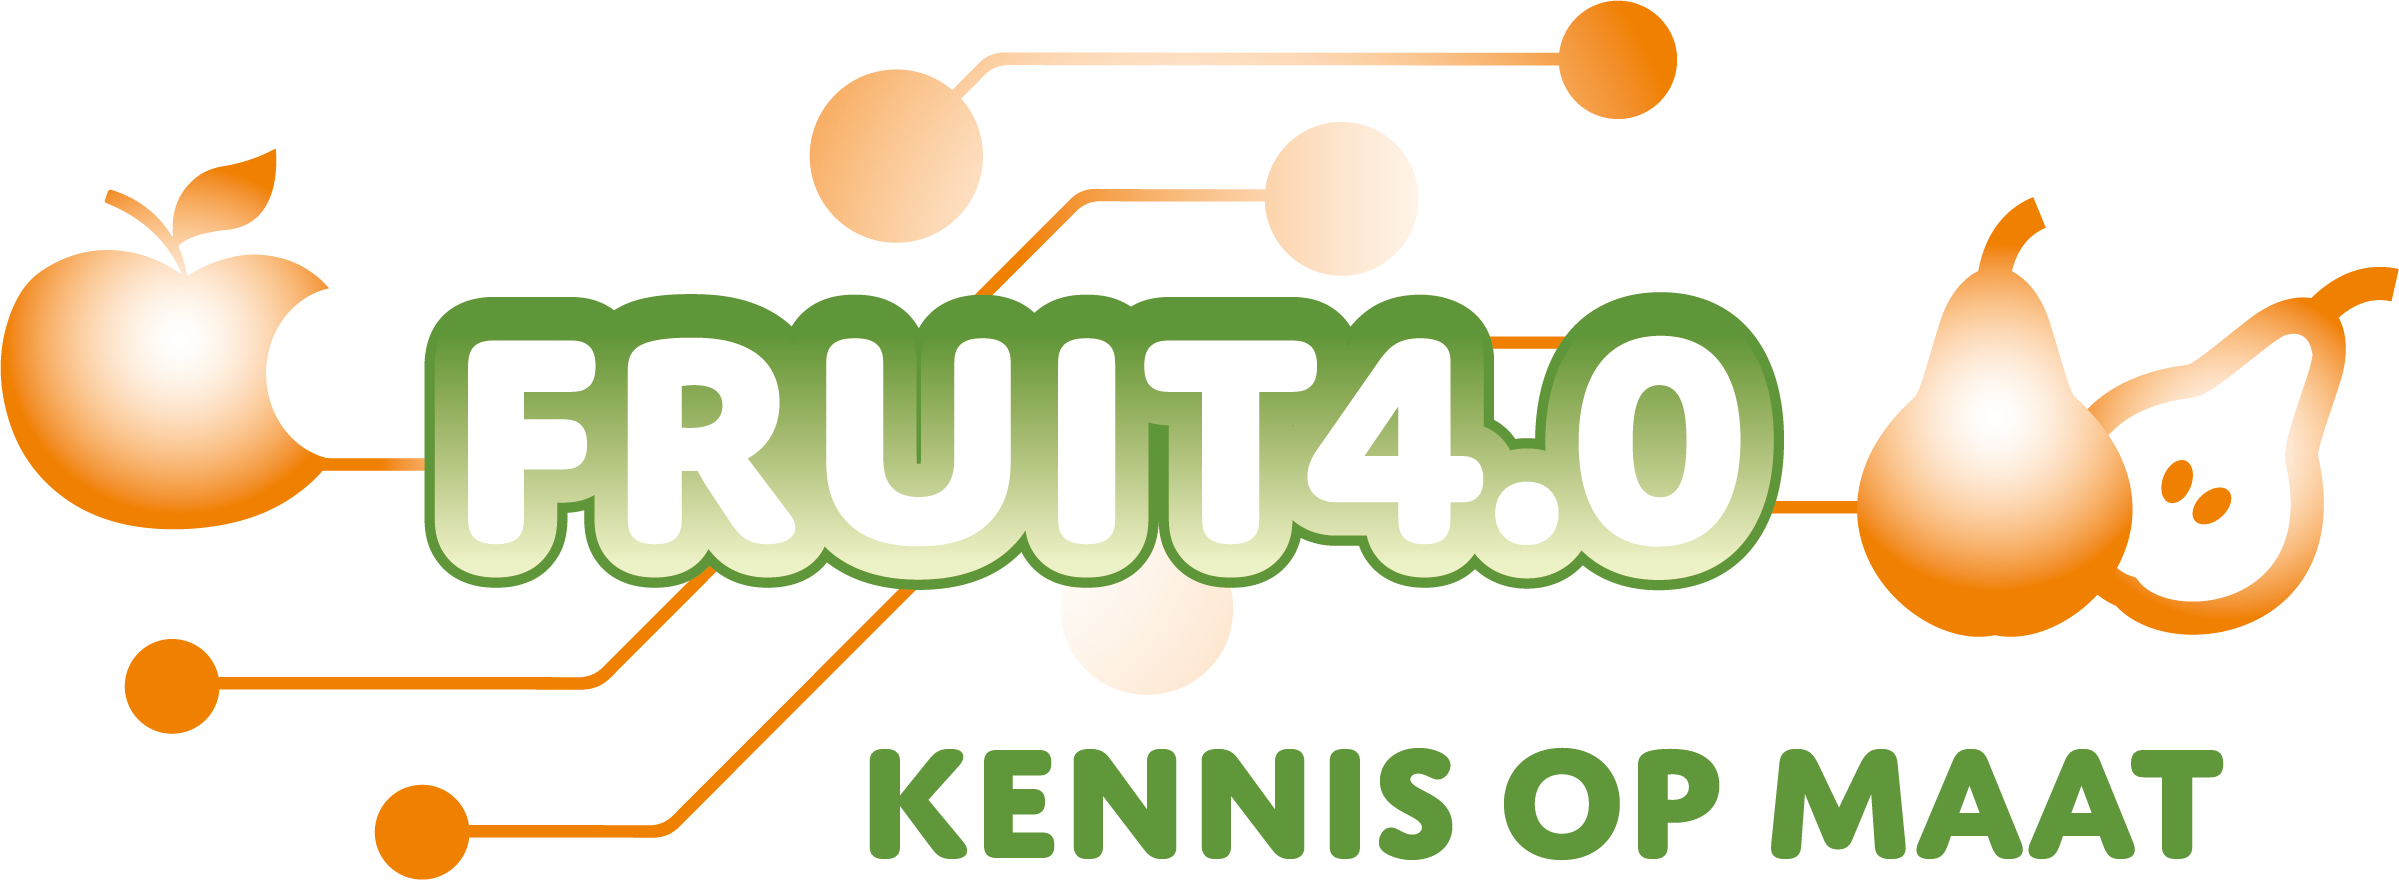 FRUIT4.0-KennisOpMaat-logo.png